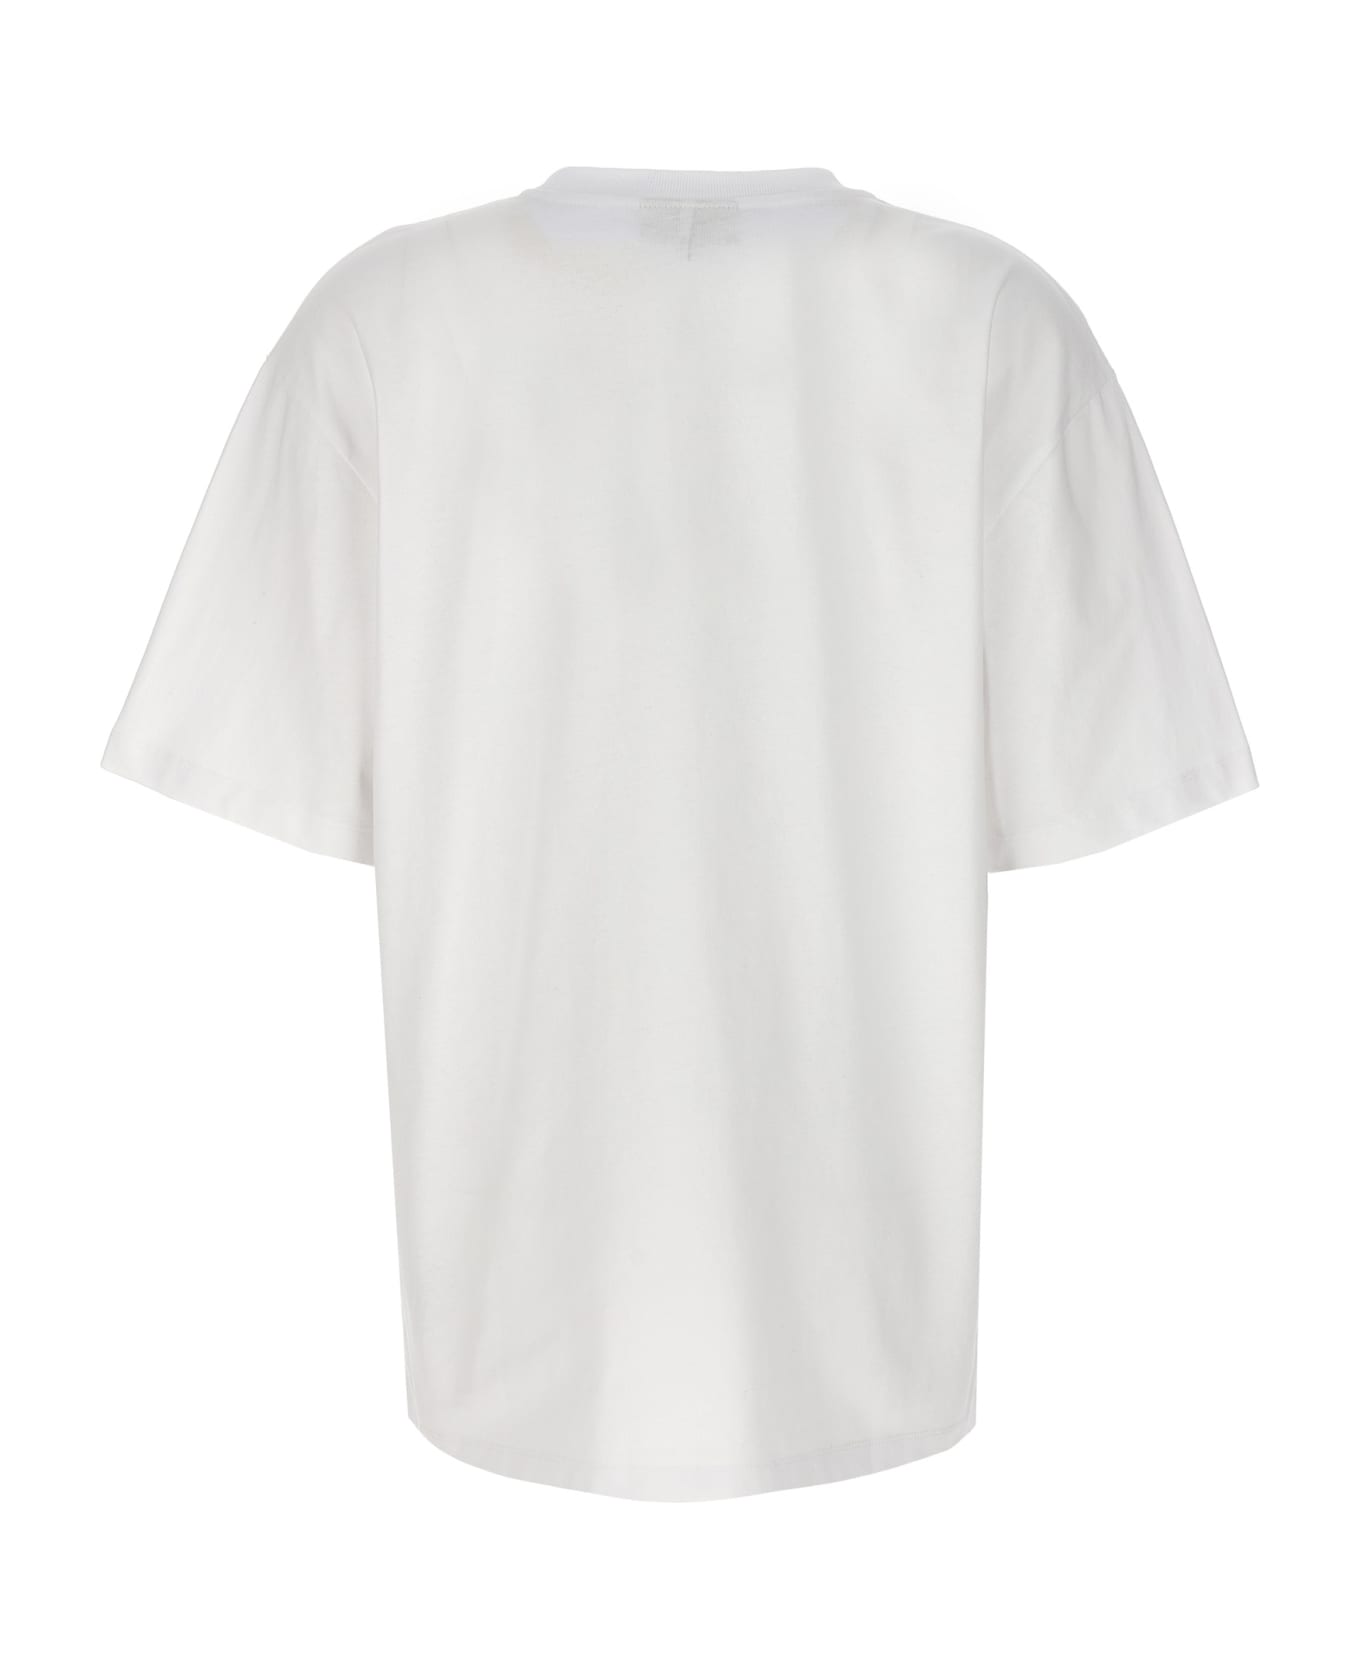 Ganni Logo Print T-shirt - White